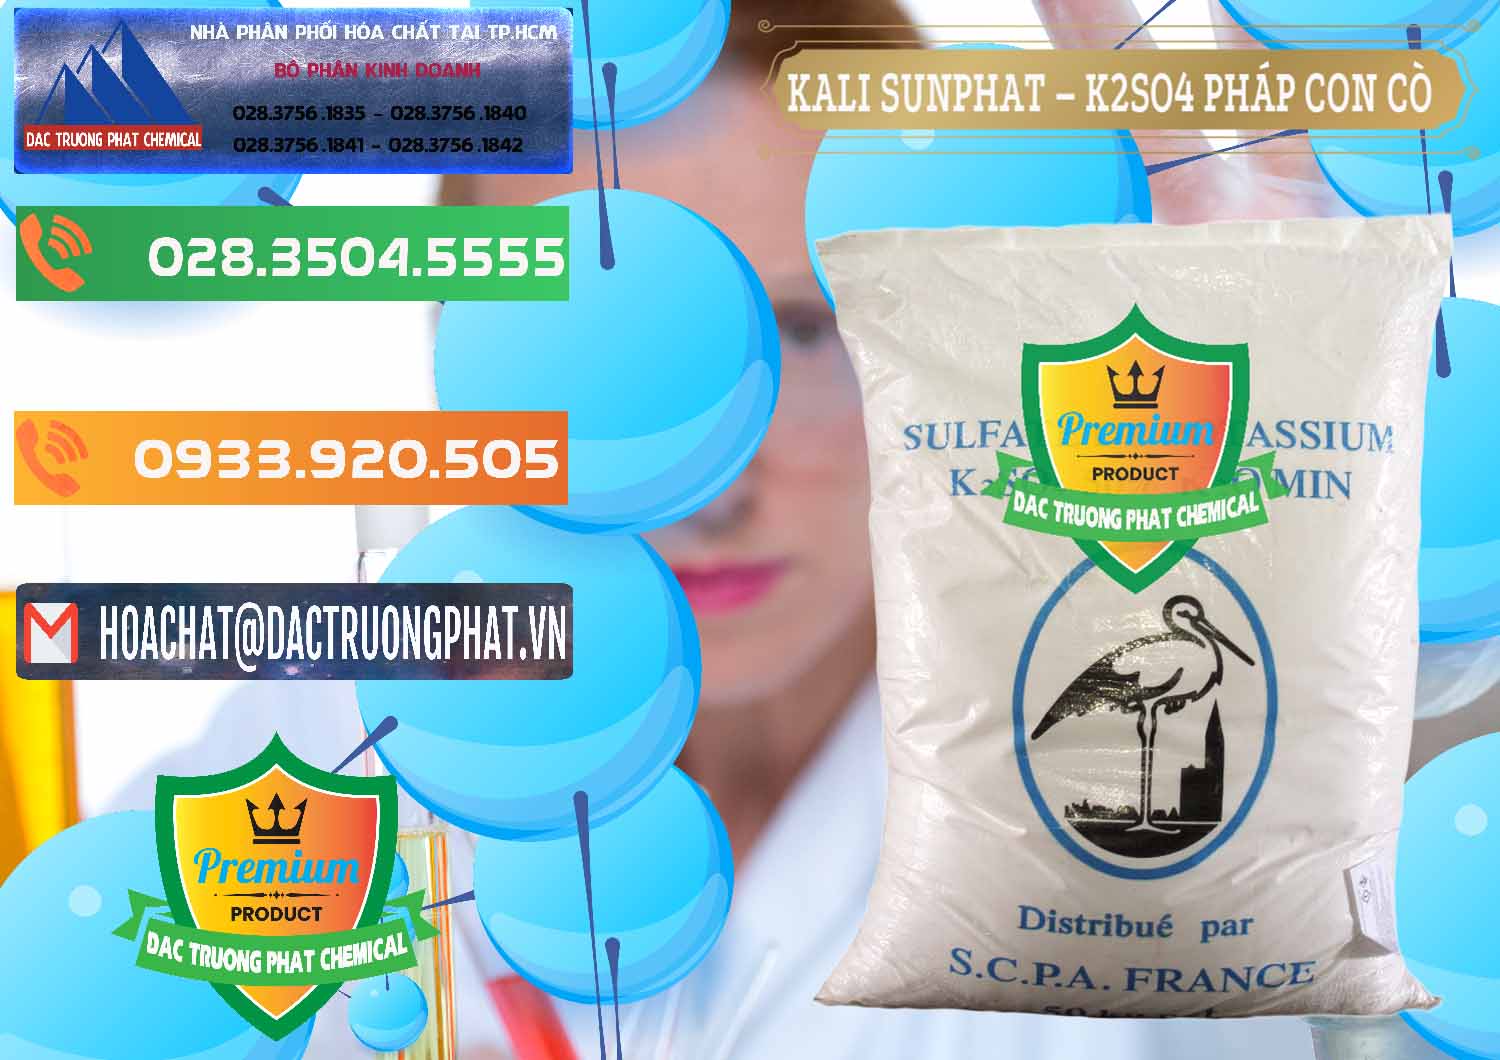 Công ty chuyên phân phối ( bán ) Kali Sunphat – K2SO4 Con Cò Pháp France - 0083 - Đơn vị chuyên phân phối ( cung ứng ) hóa chất tại TP.HCM - hoachatxulynuoc.com.vn